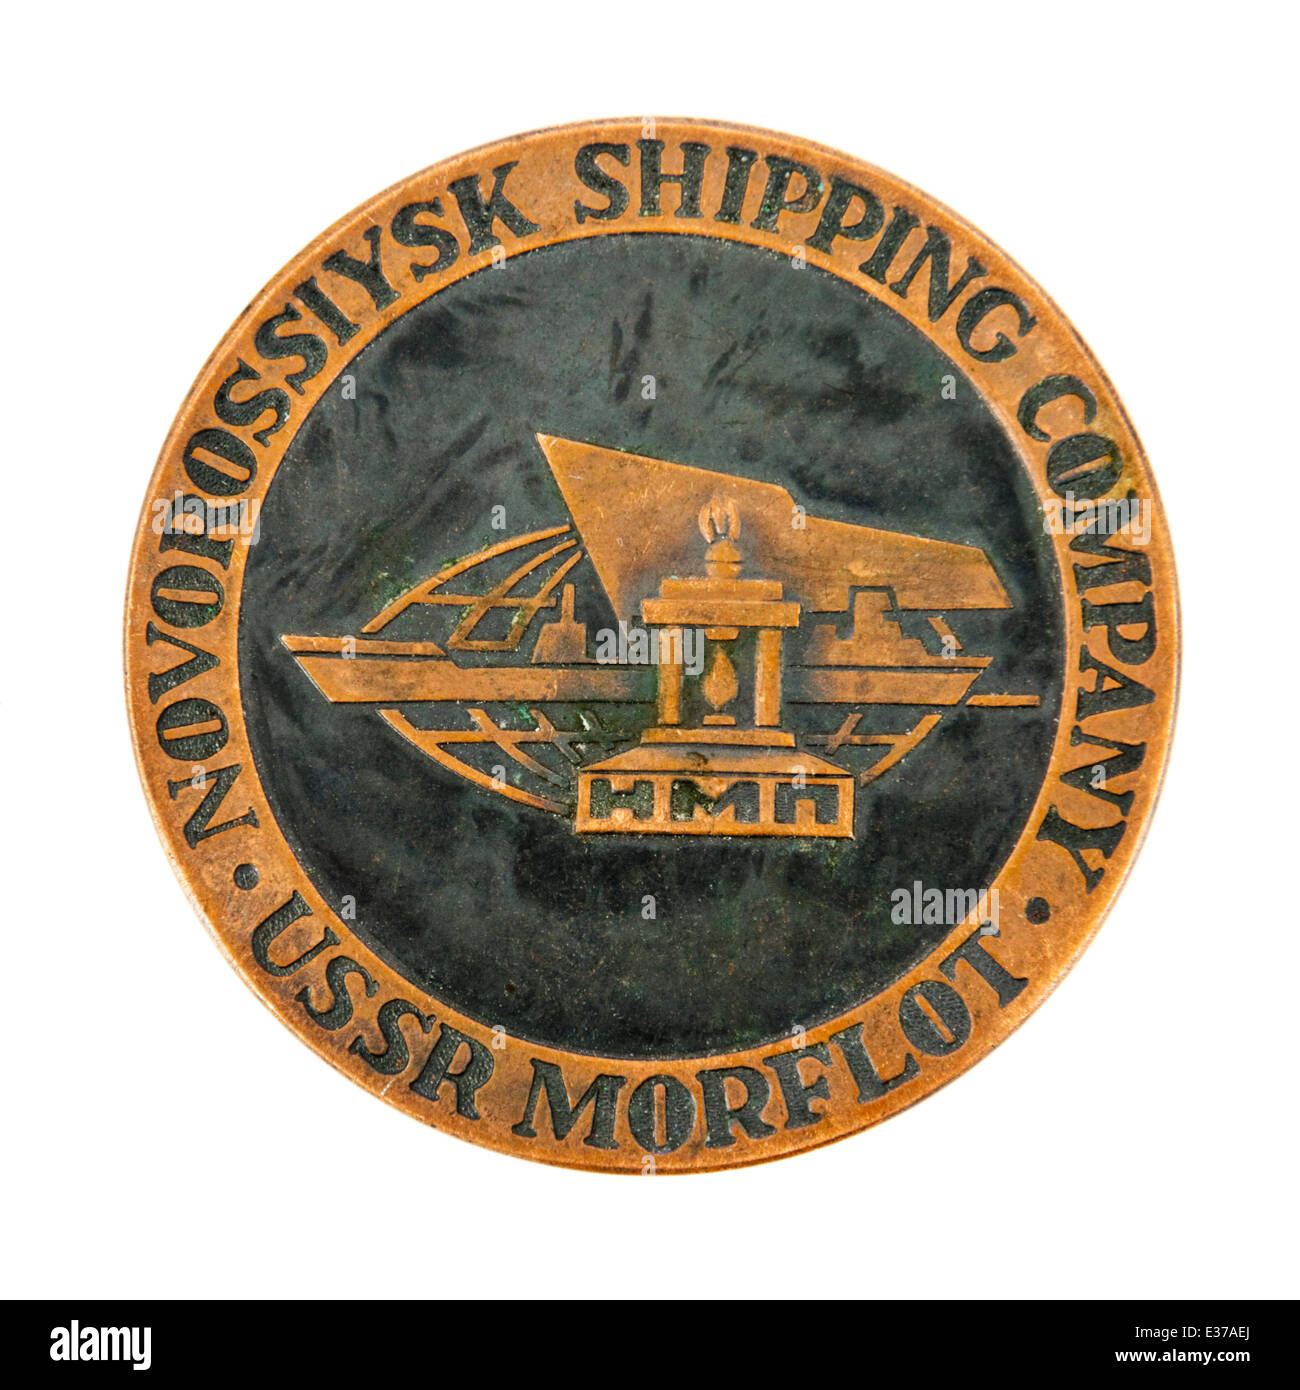 Noworossijsk Shipping Company (UdSSR Morflot) Medaillon. Stockfoto